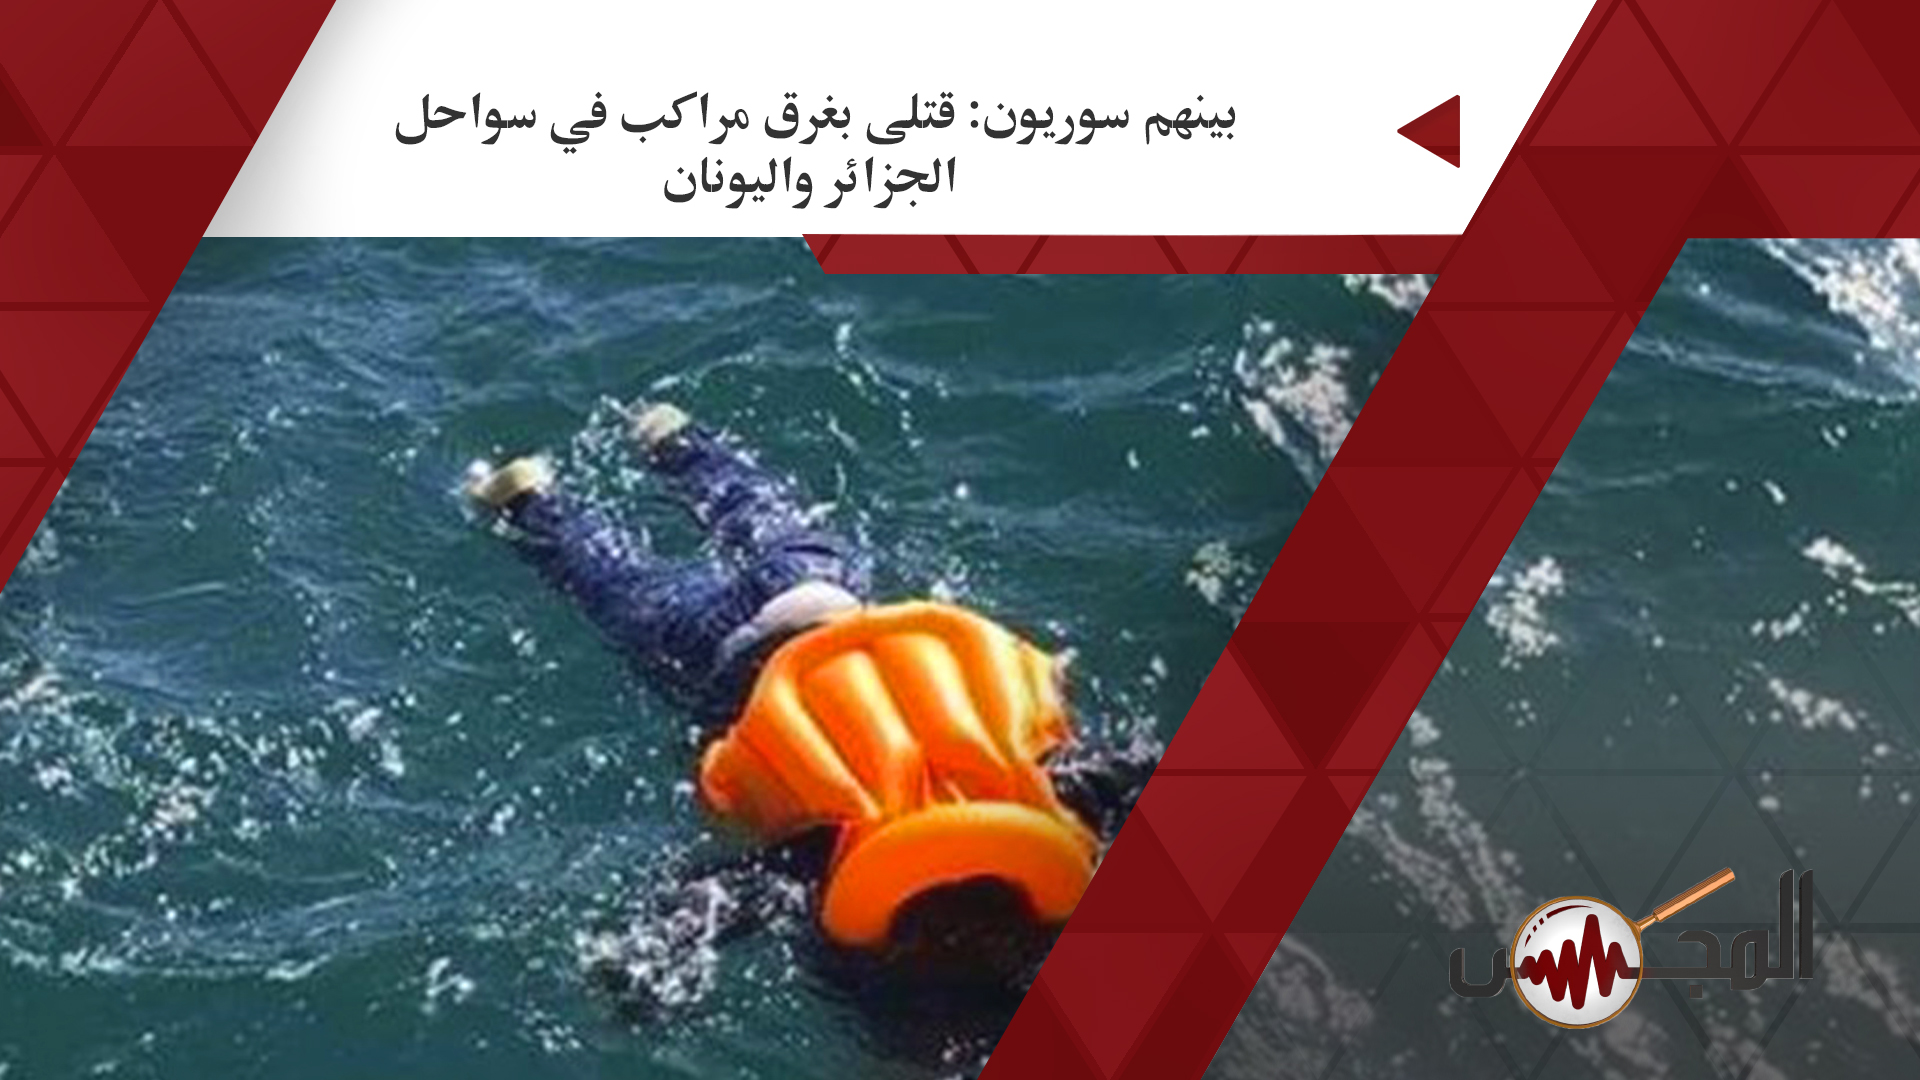 بينهم سوريون: قتلى بغرق مراكب في سواحل الجزائر واليونان